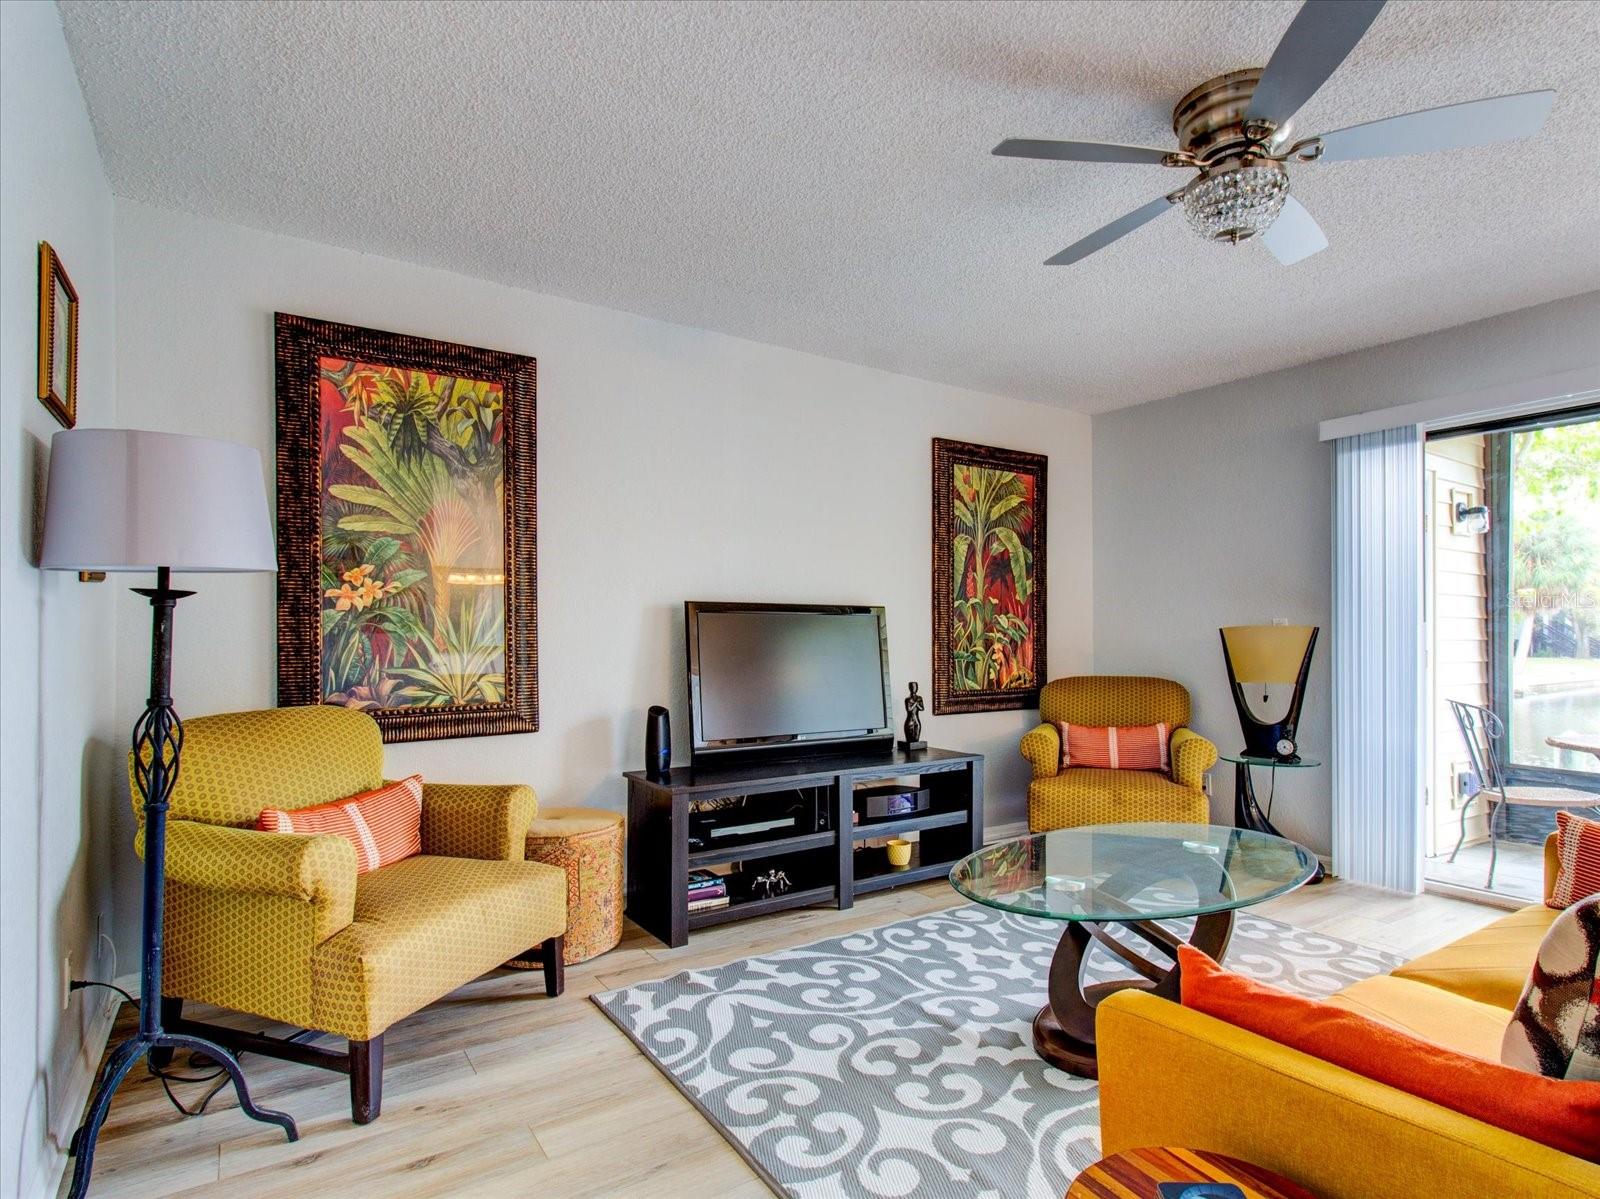 Living Room Updated flooring, Orange Peel Texture, & New Ceiling Fan